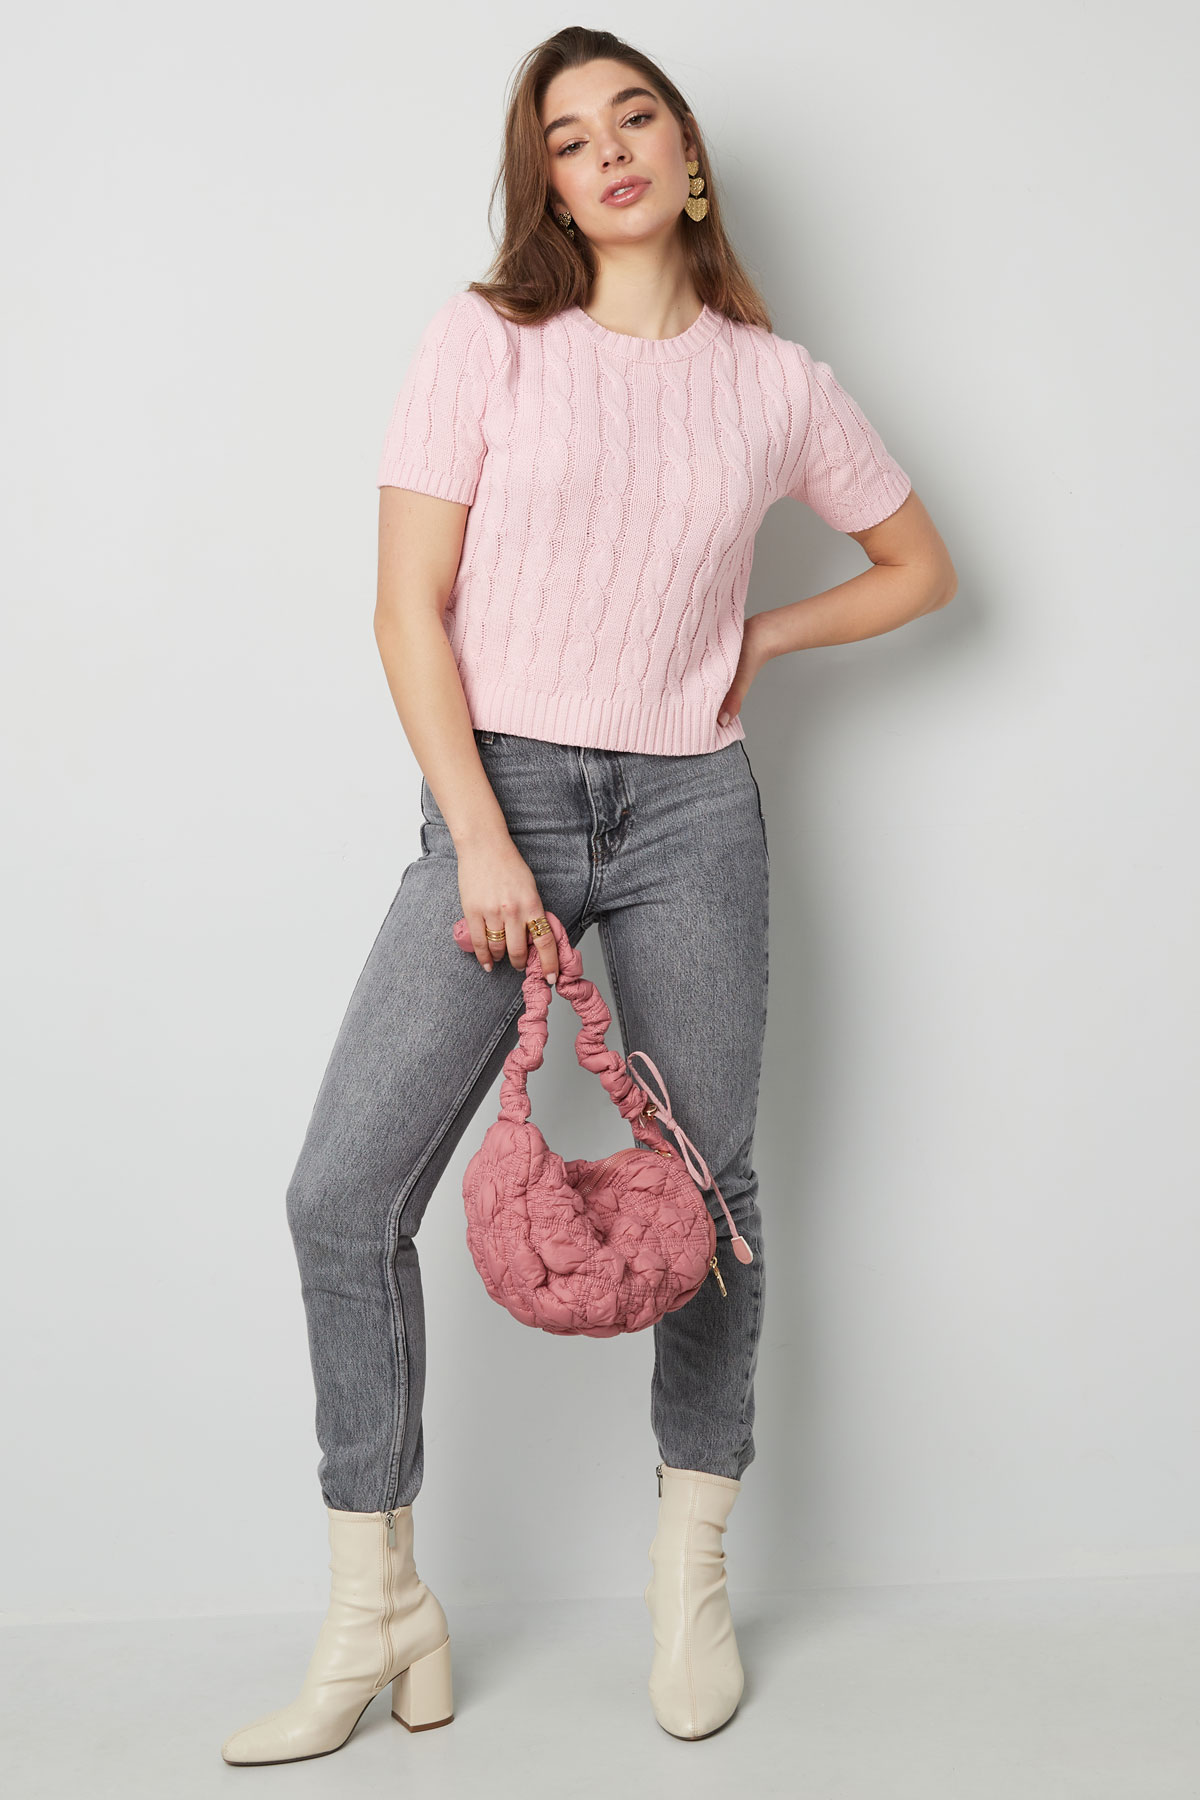 Jersey de punto clásico con trenzas y manga corta pequeño/mediano – rosa h5 Imagen5